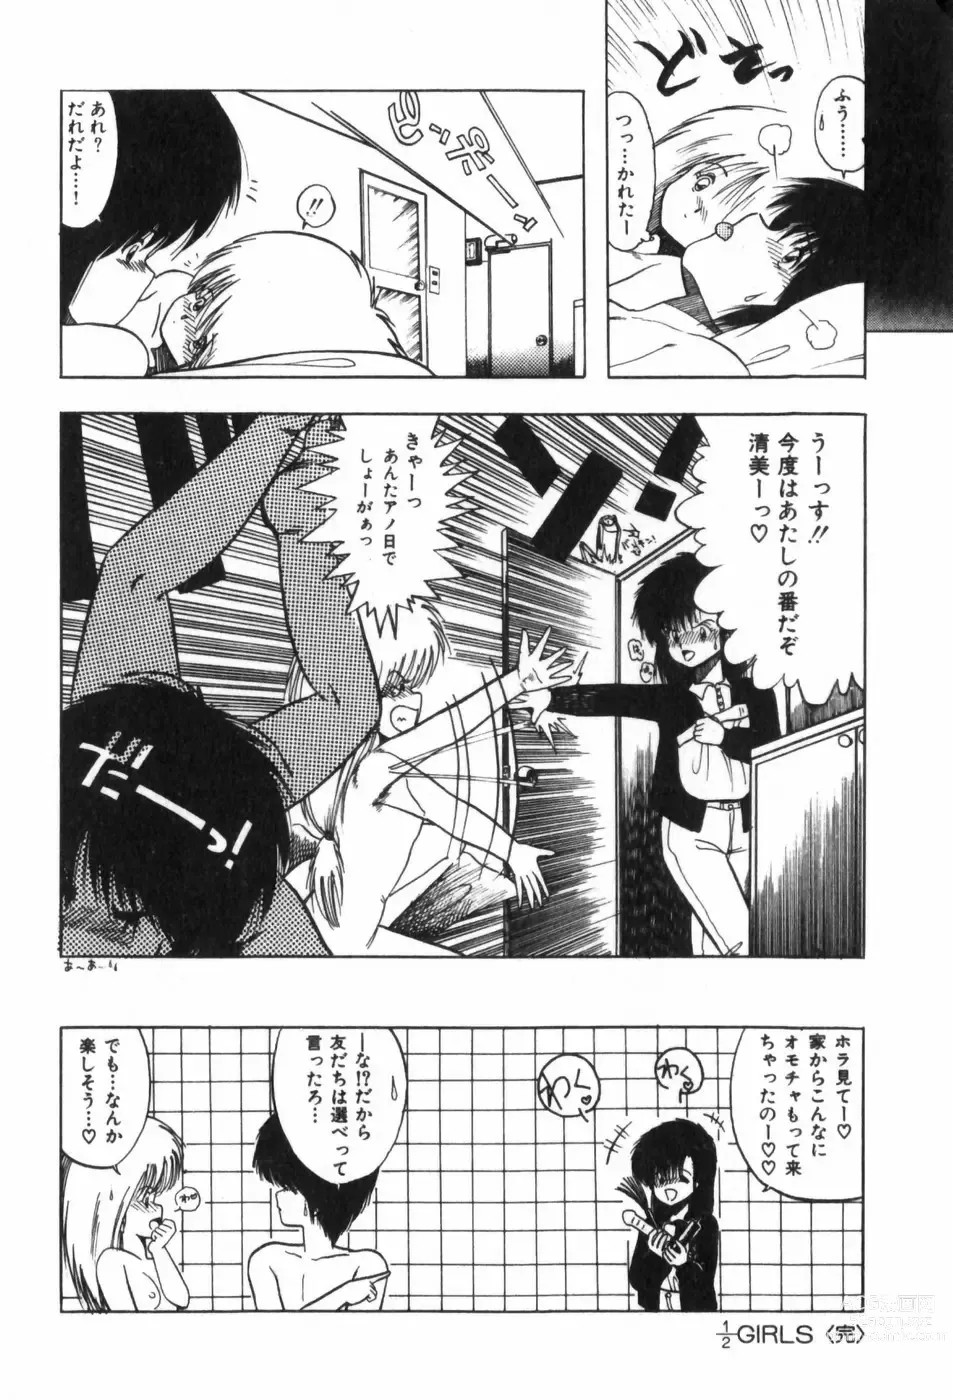 Page 196 of manga Funi Funi Hanjuku Musume